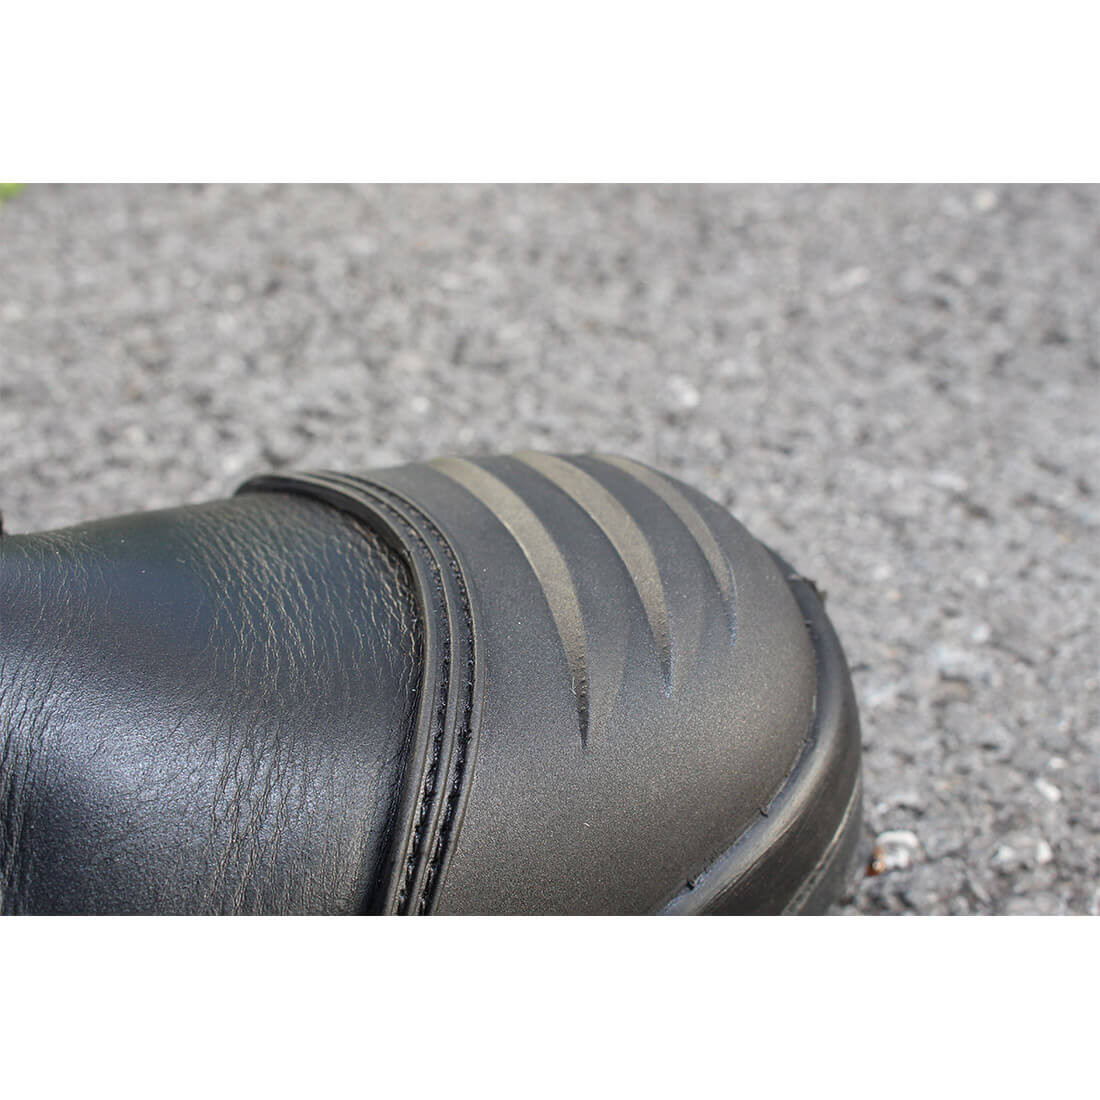 Bocanc Clyde S3+HRO+CI+HI+FO - Incaltaminte de protectie | Bocanci, Pantofi, Sandale, Cizme